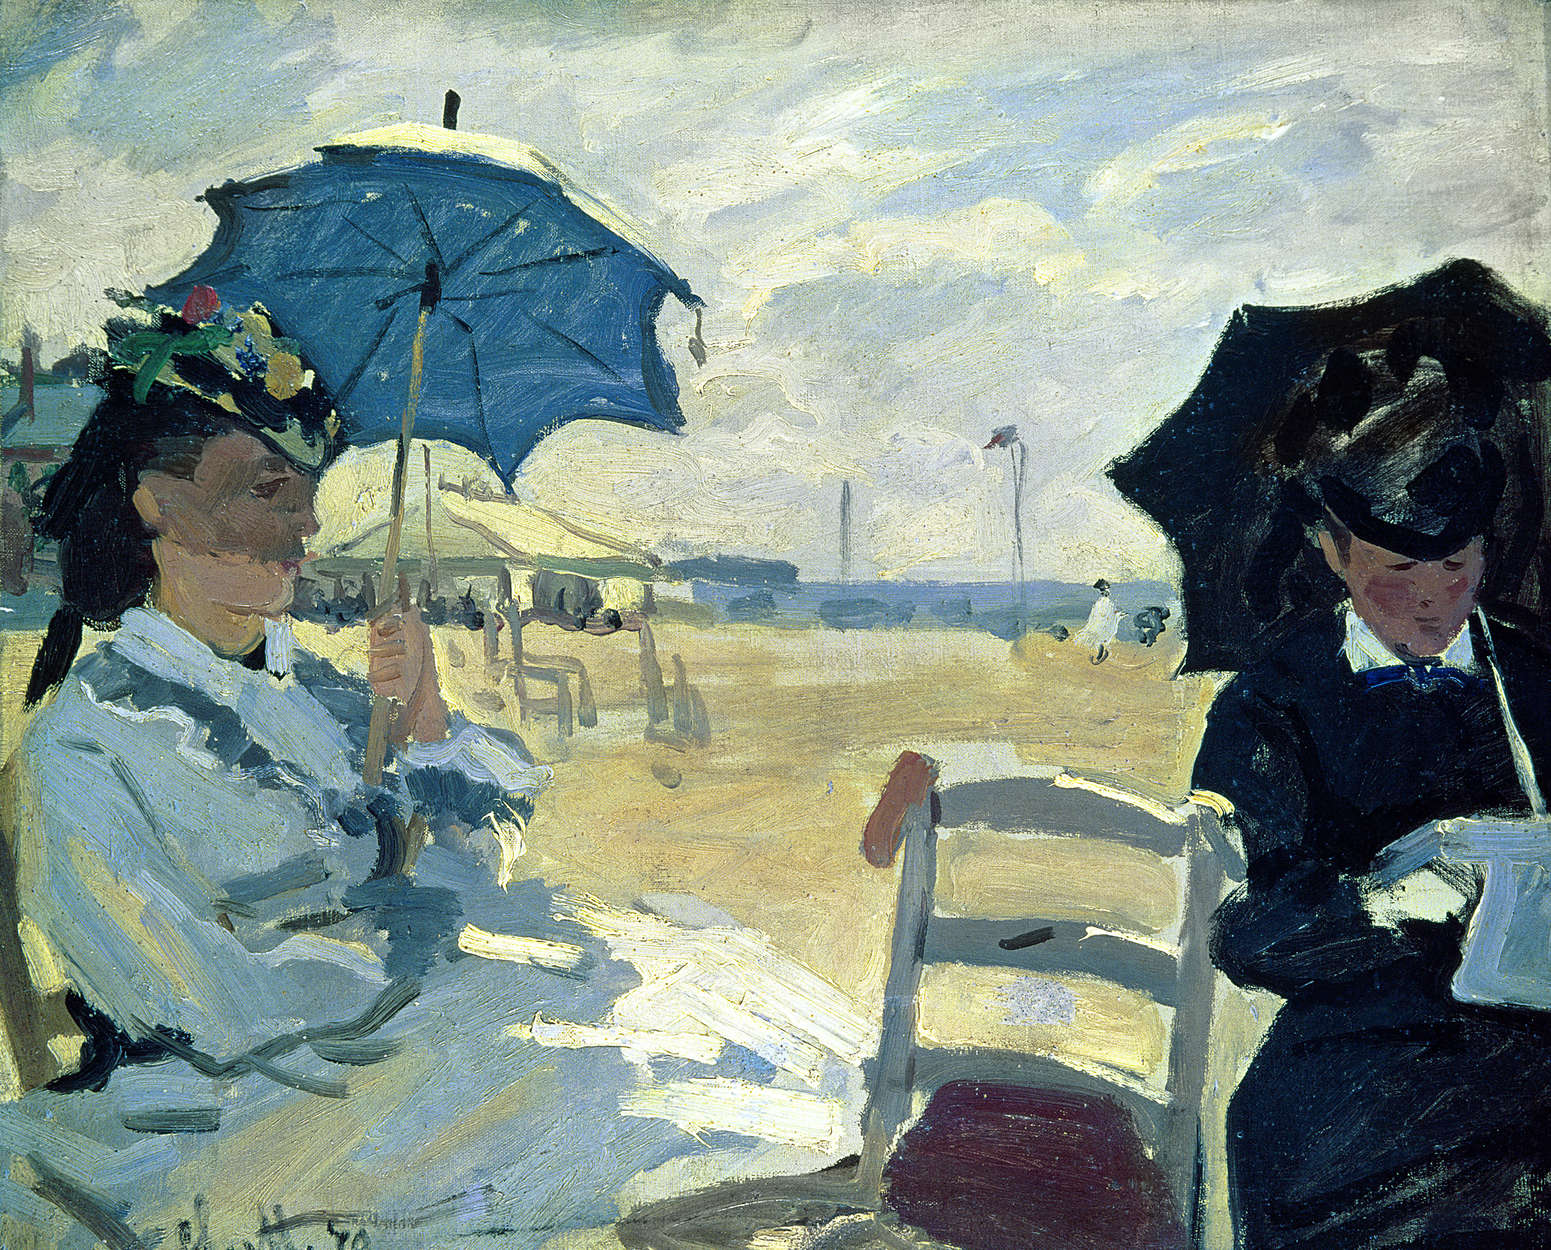             Muurschildering "Het strand Trouville" van Claude Monet
        